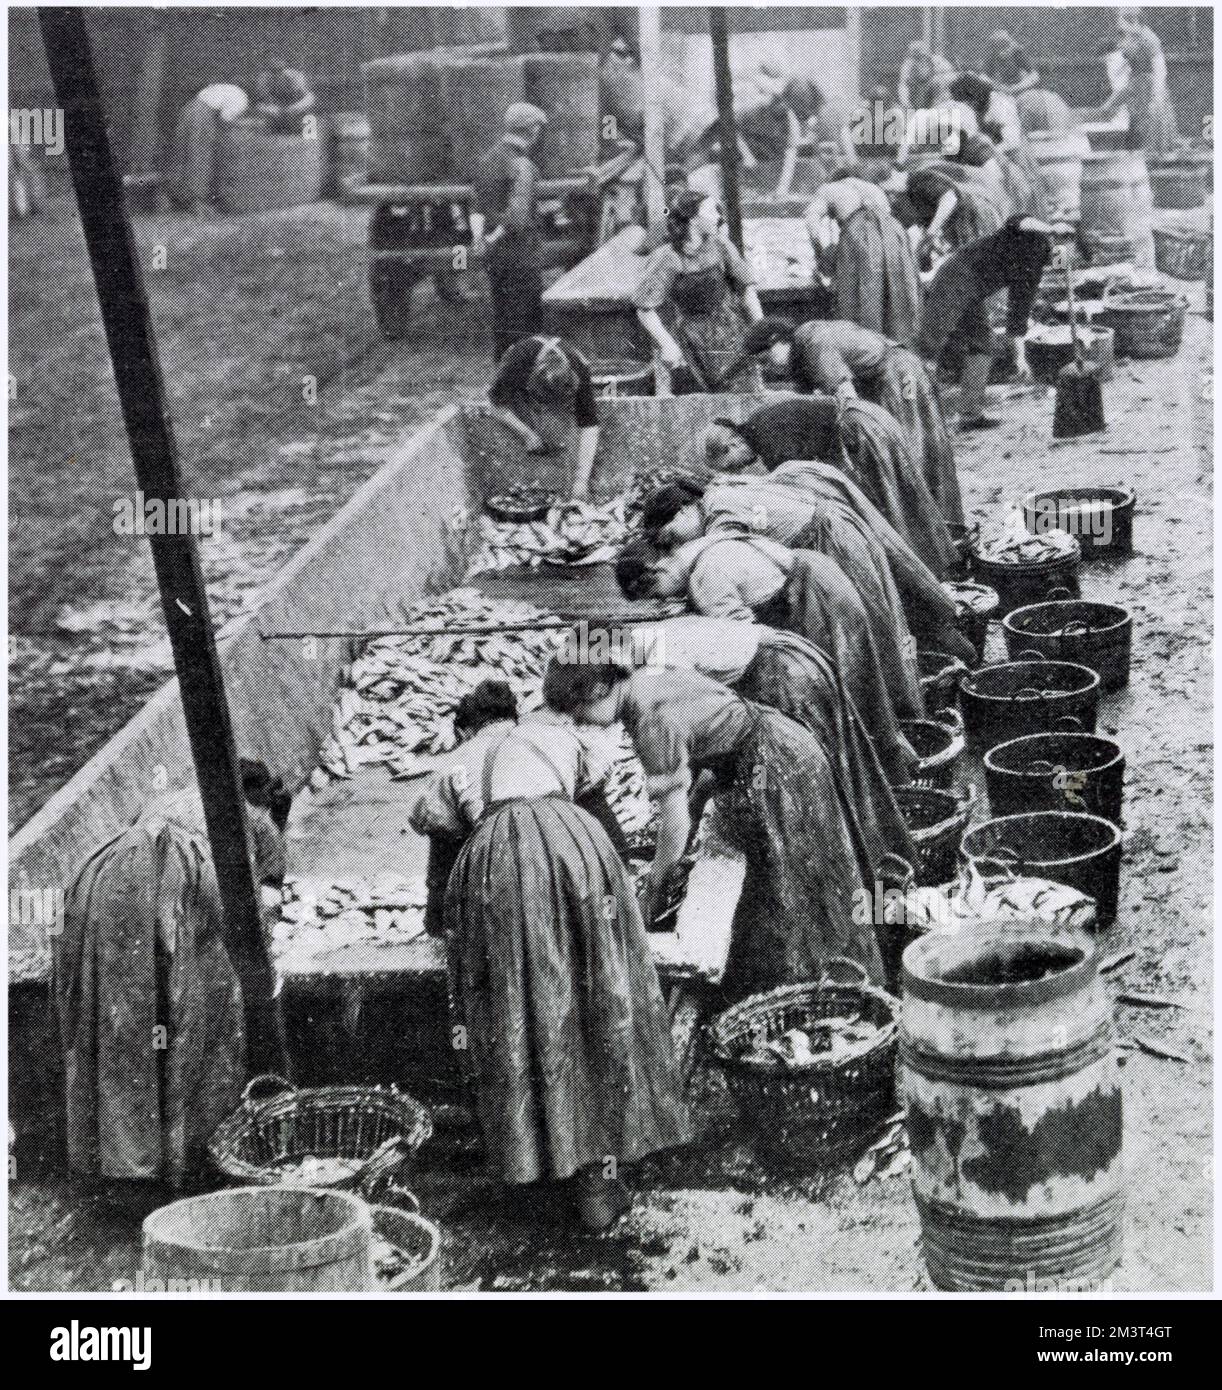 Die Städte Yarmouth und Lowesoft in den östlichen anglianischen Häfen waren voller Frauen aus Schottland, die im Oktober und November bei der Heringsernte behilflich waren. Frauen, die als „Regenrinnen“ bezeichnet werden und über große offene Tröge arbeiten, um den Hering auszunehmen. Stockfoto